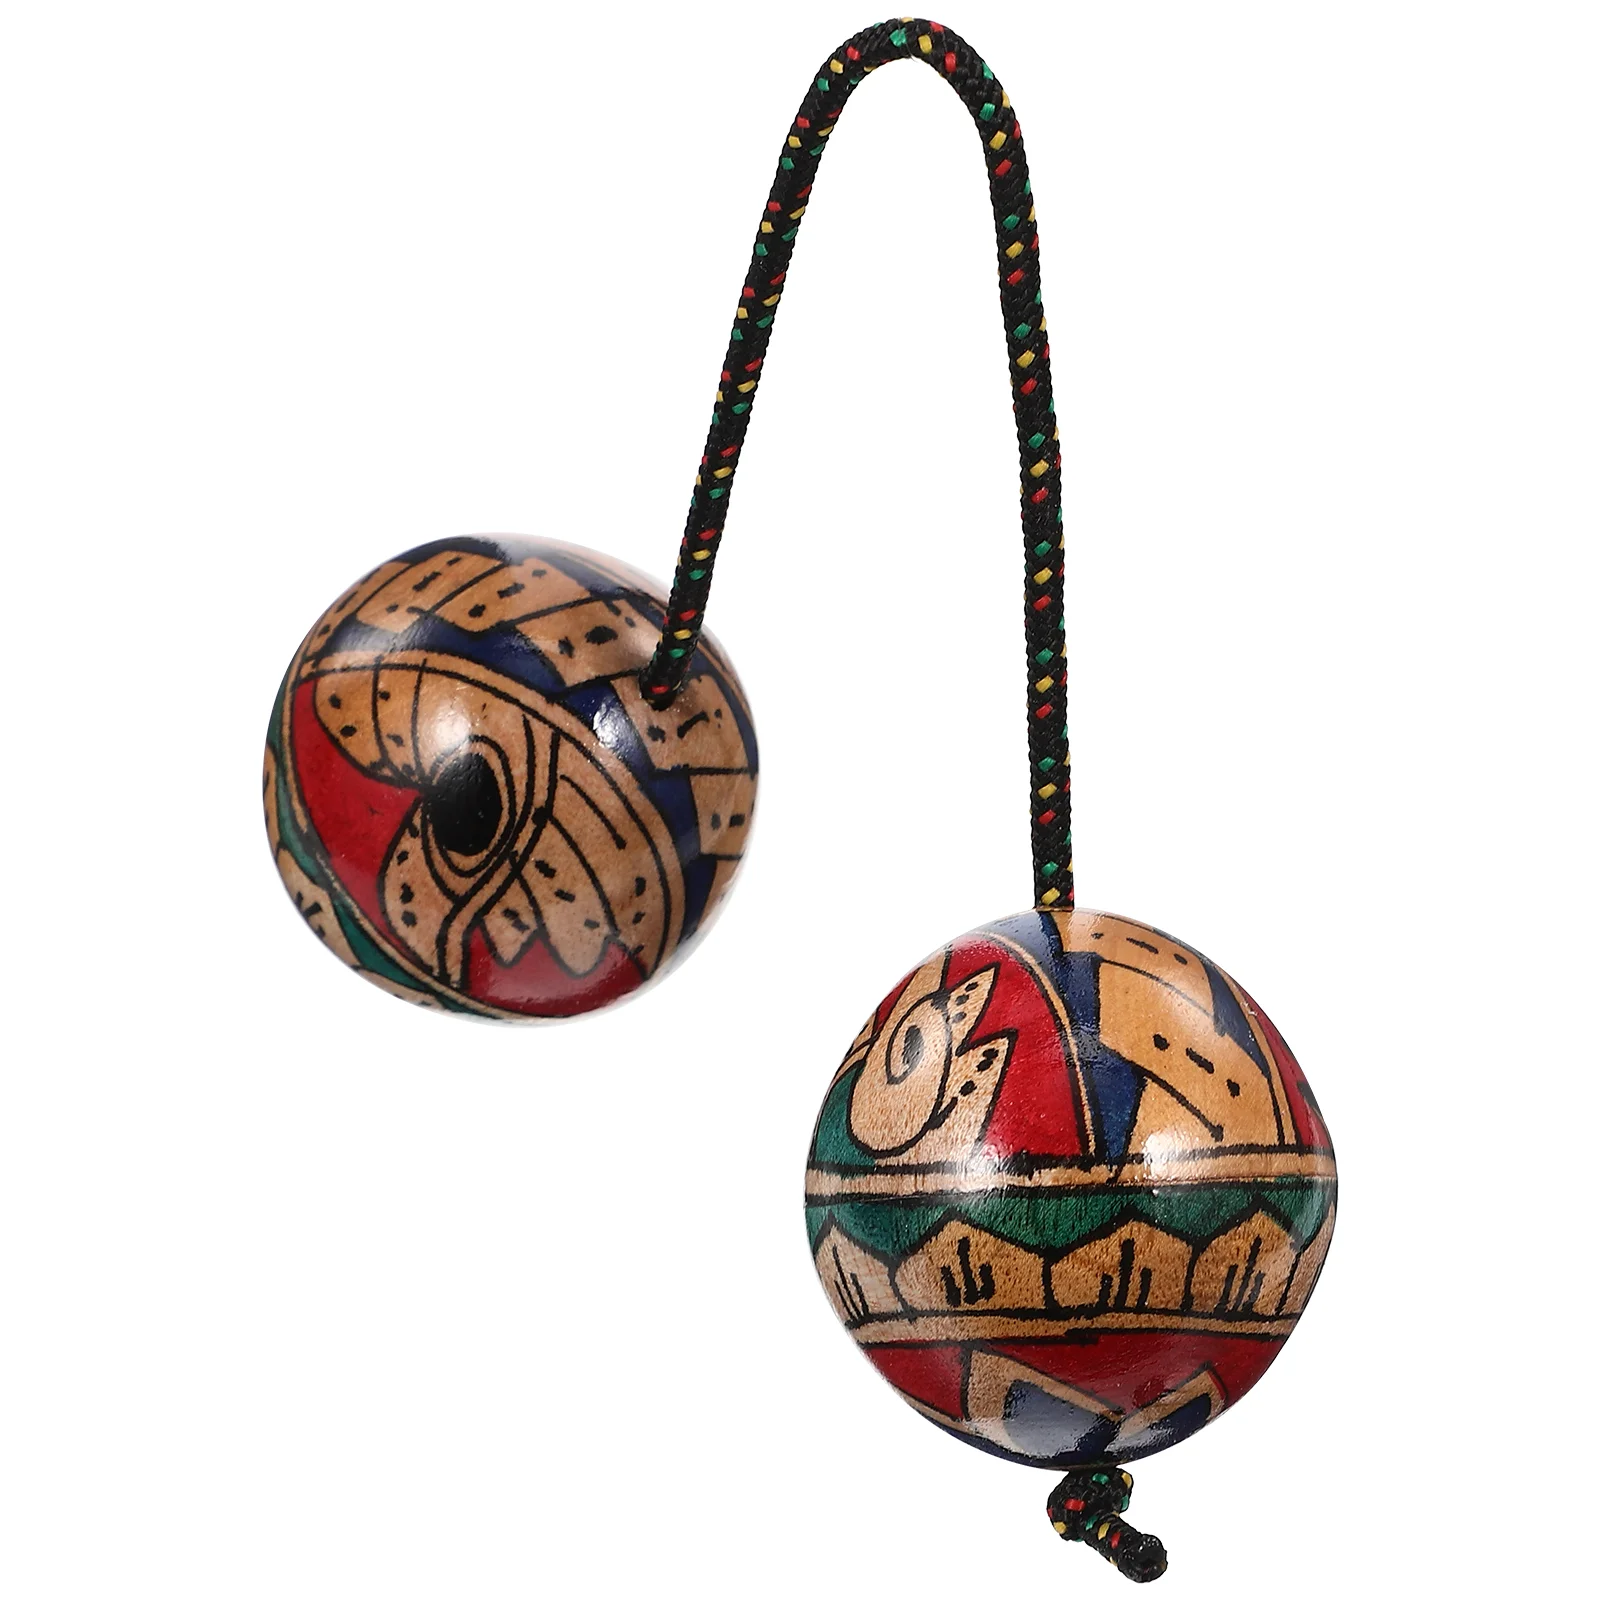 

Пластиковый песочный мяч, музыкальный инструмент ручной работы, деревянный песочный мяч